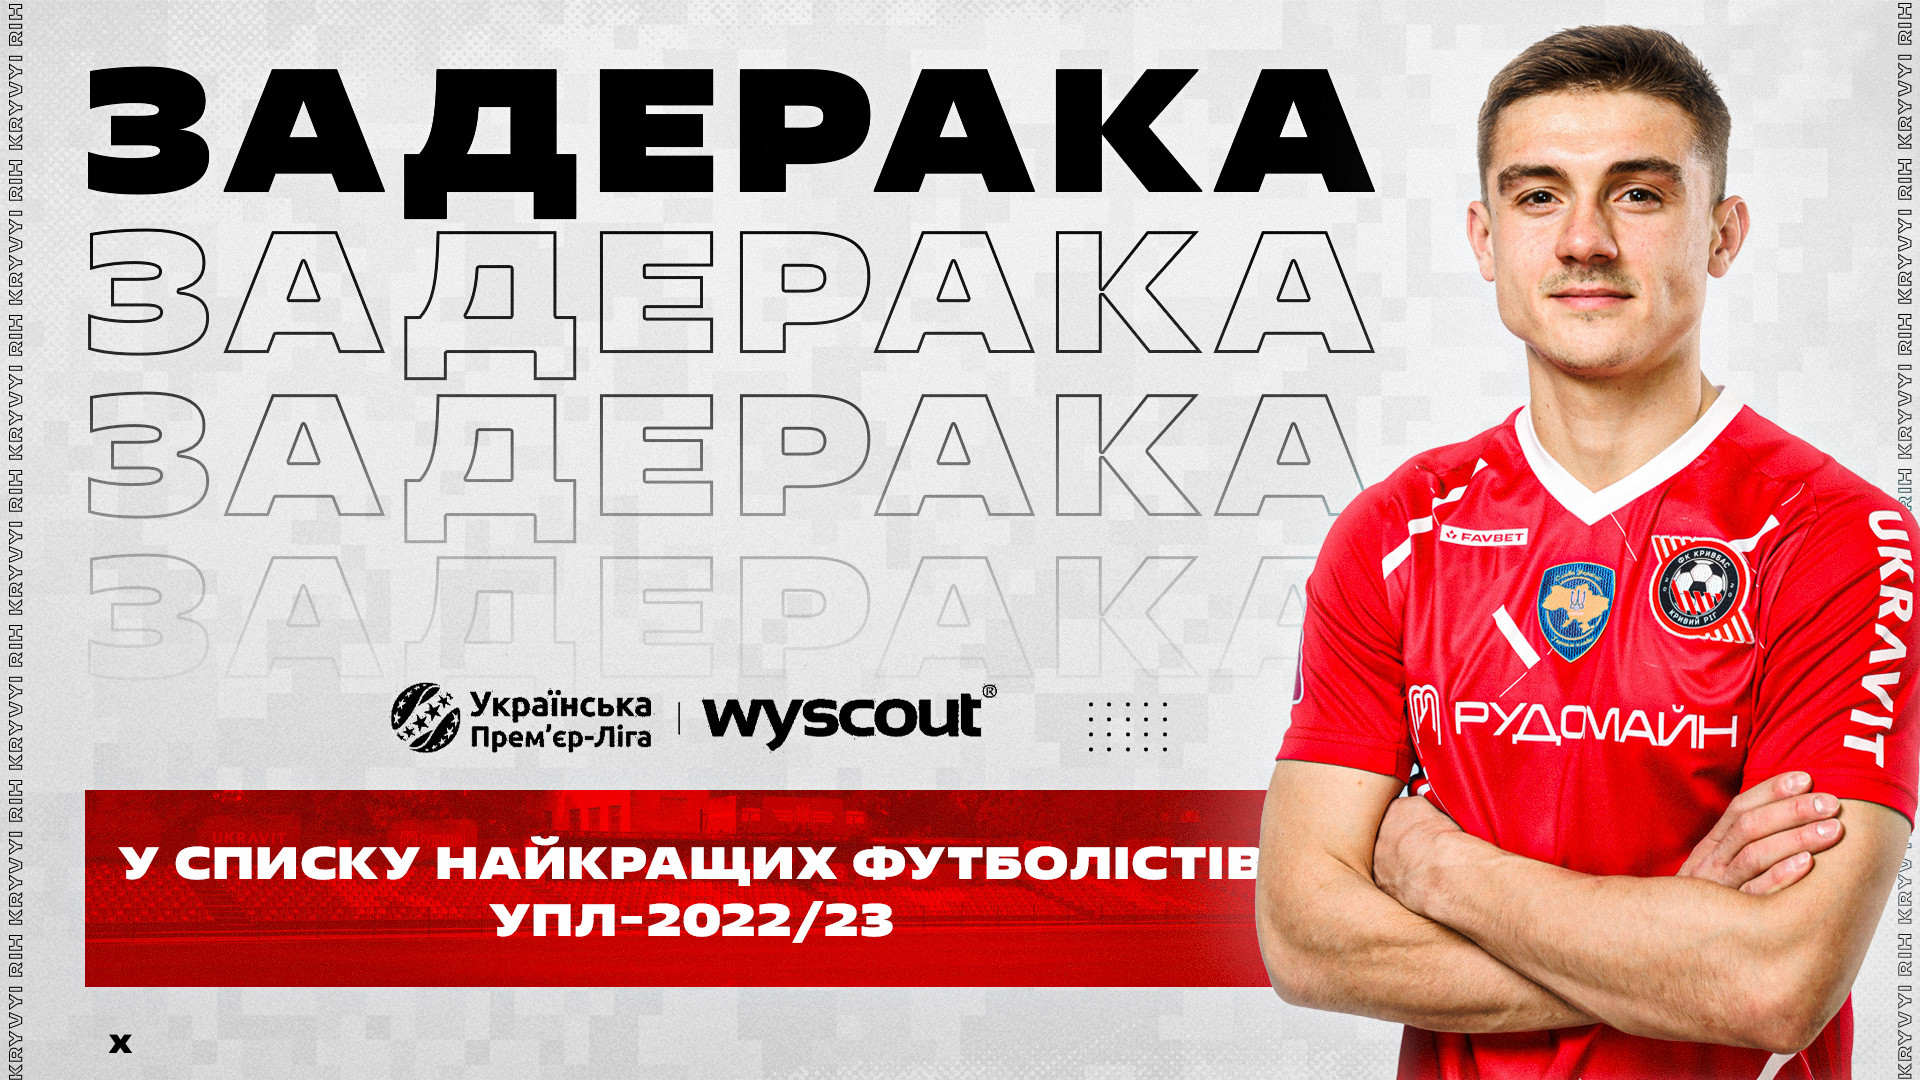 Максим Задерака - серед найкращих гравців УПЛ-2022/23 за версією Wyscout}